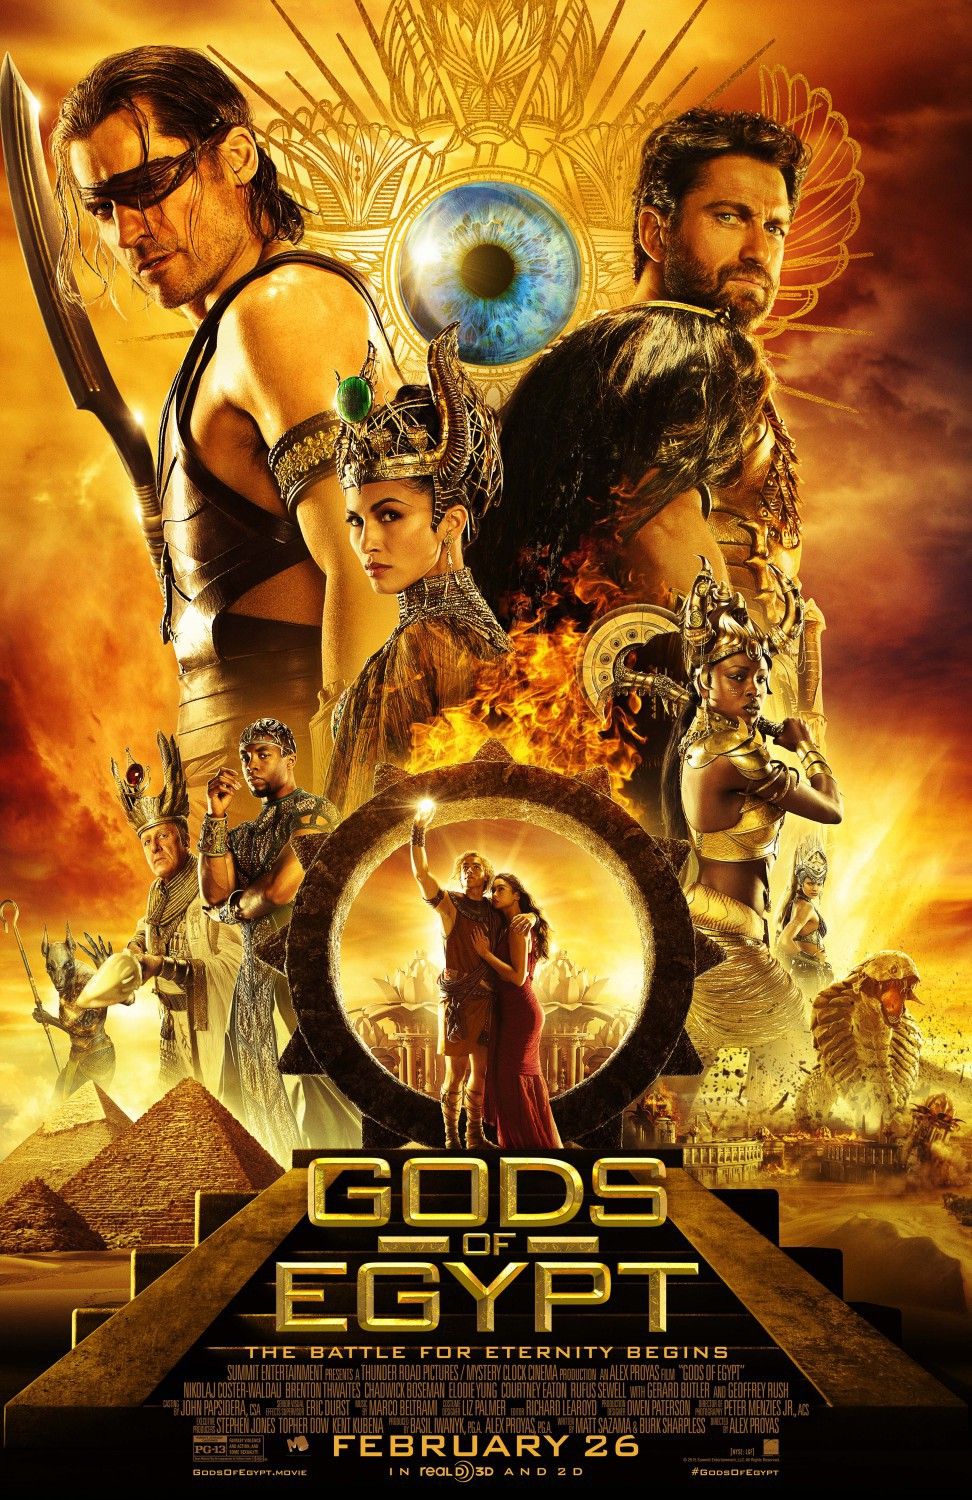 Gods of Egypt (2016) Hindi Dubbed Full Movie